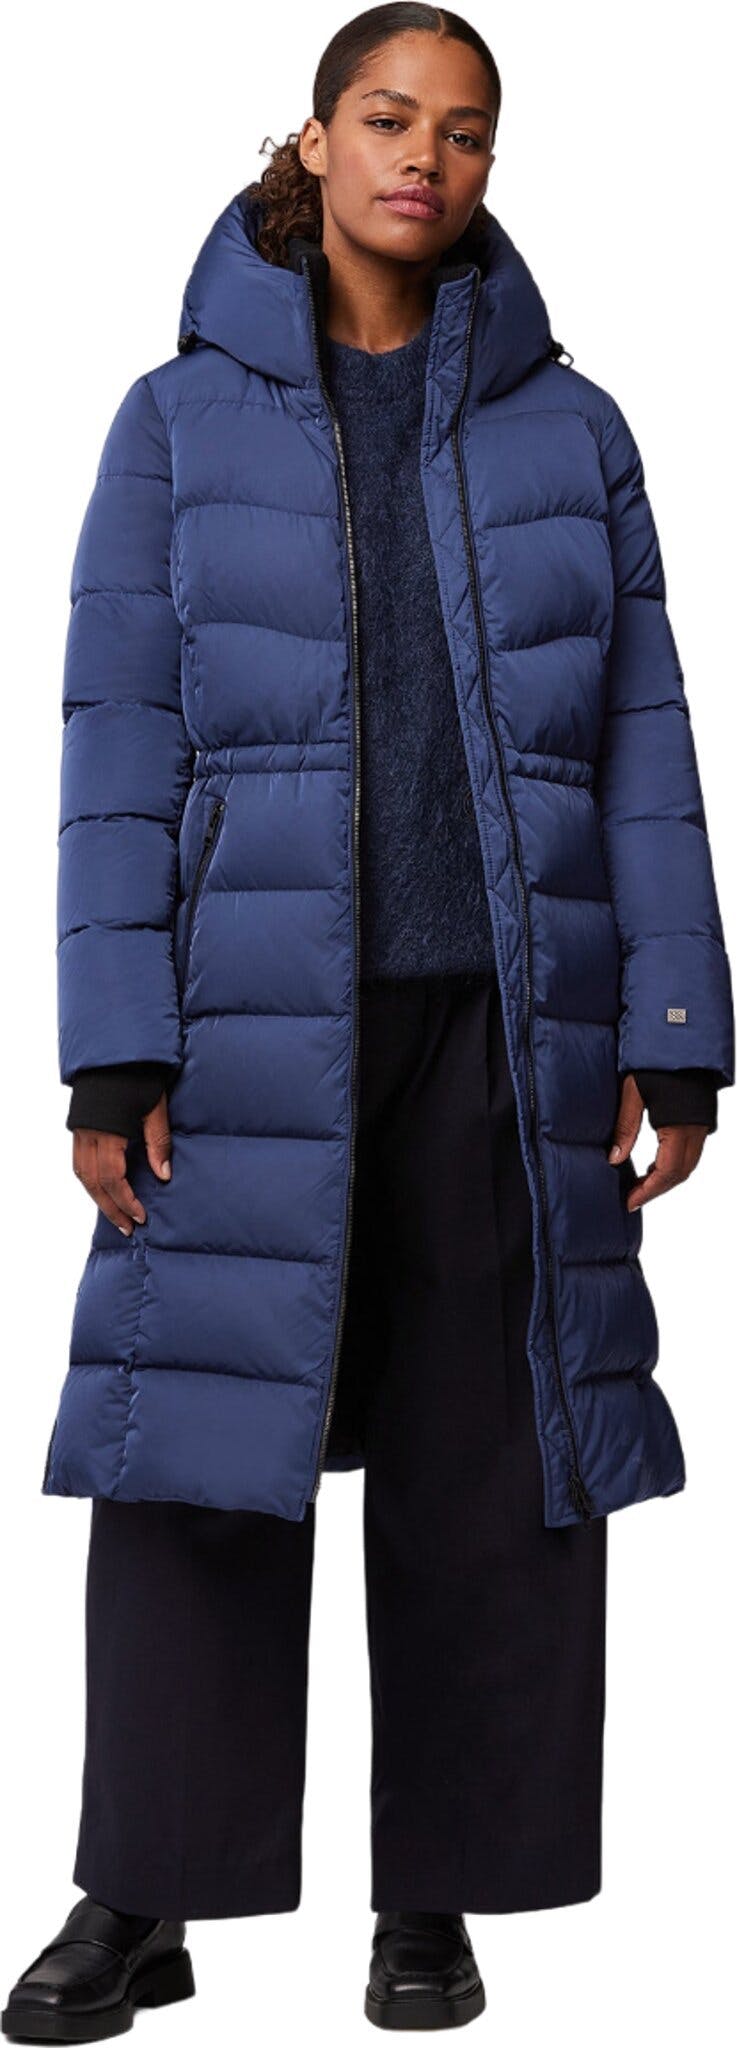 Numéro de l'image de la galerie de produits 2 pour le produit Manteau semi-ajusté en duvet radiant avec capuchon Liv - Femme